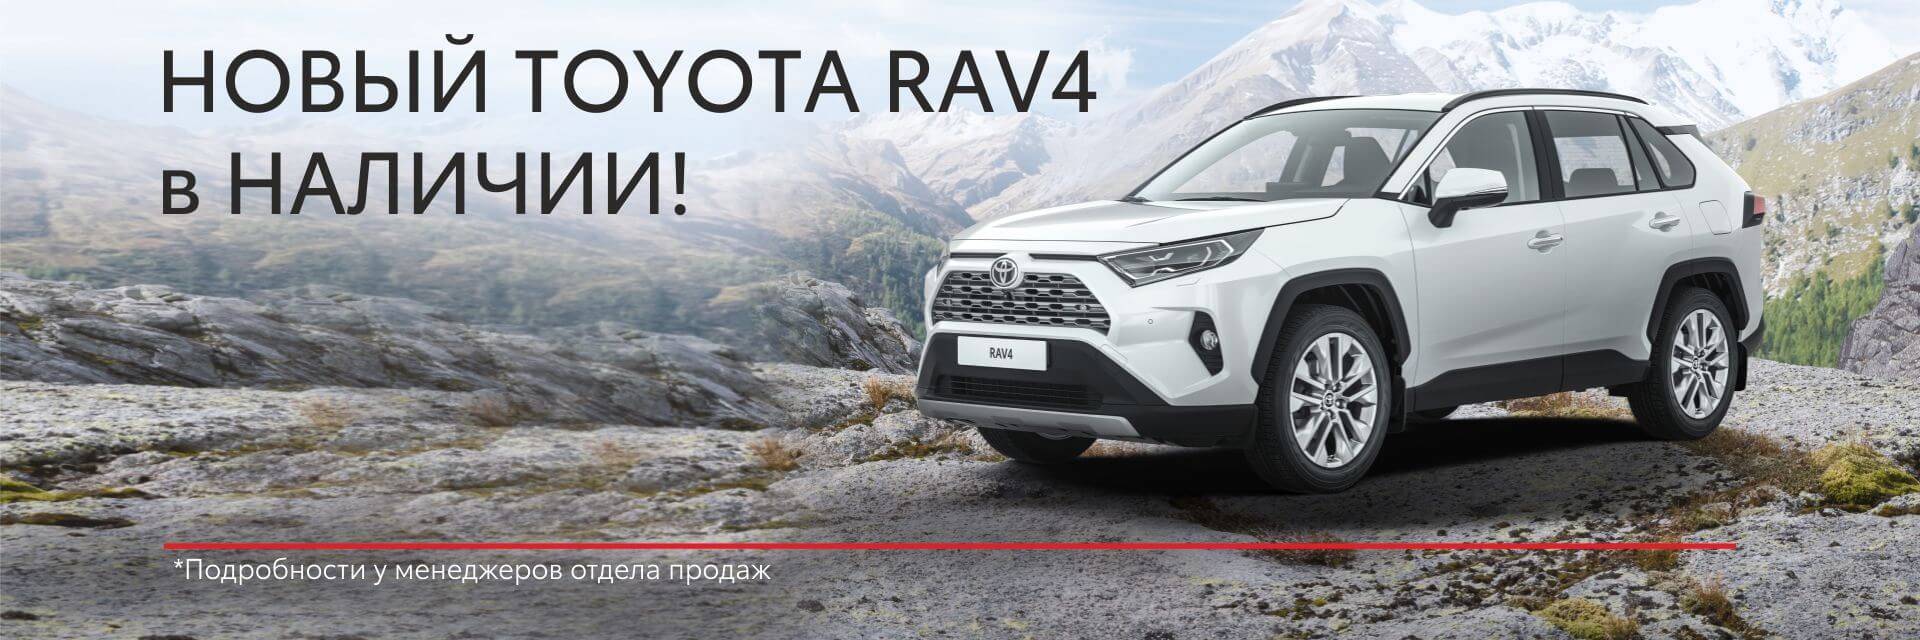 Новый Toyota RAV4 в наличии!